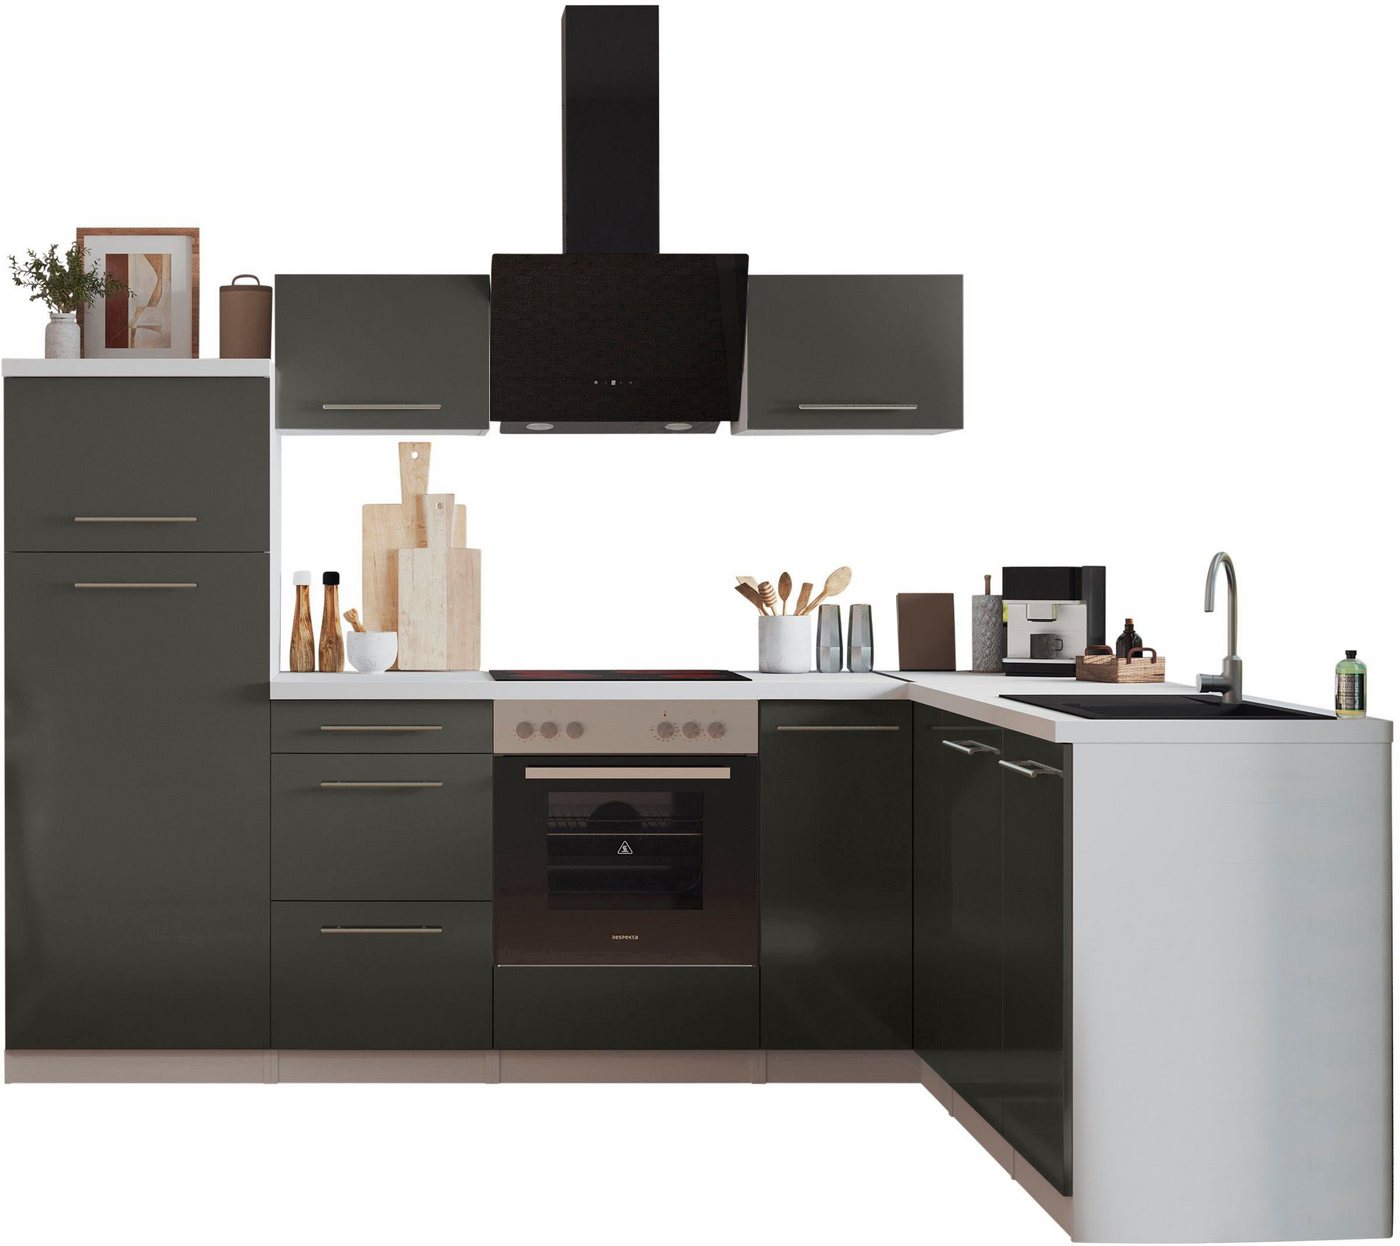 RESPEKTA Küche Amanda, Breite 260 cm, mit Soft-Close, exklusiver Konfiguration für OTTO von RESPEKTA